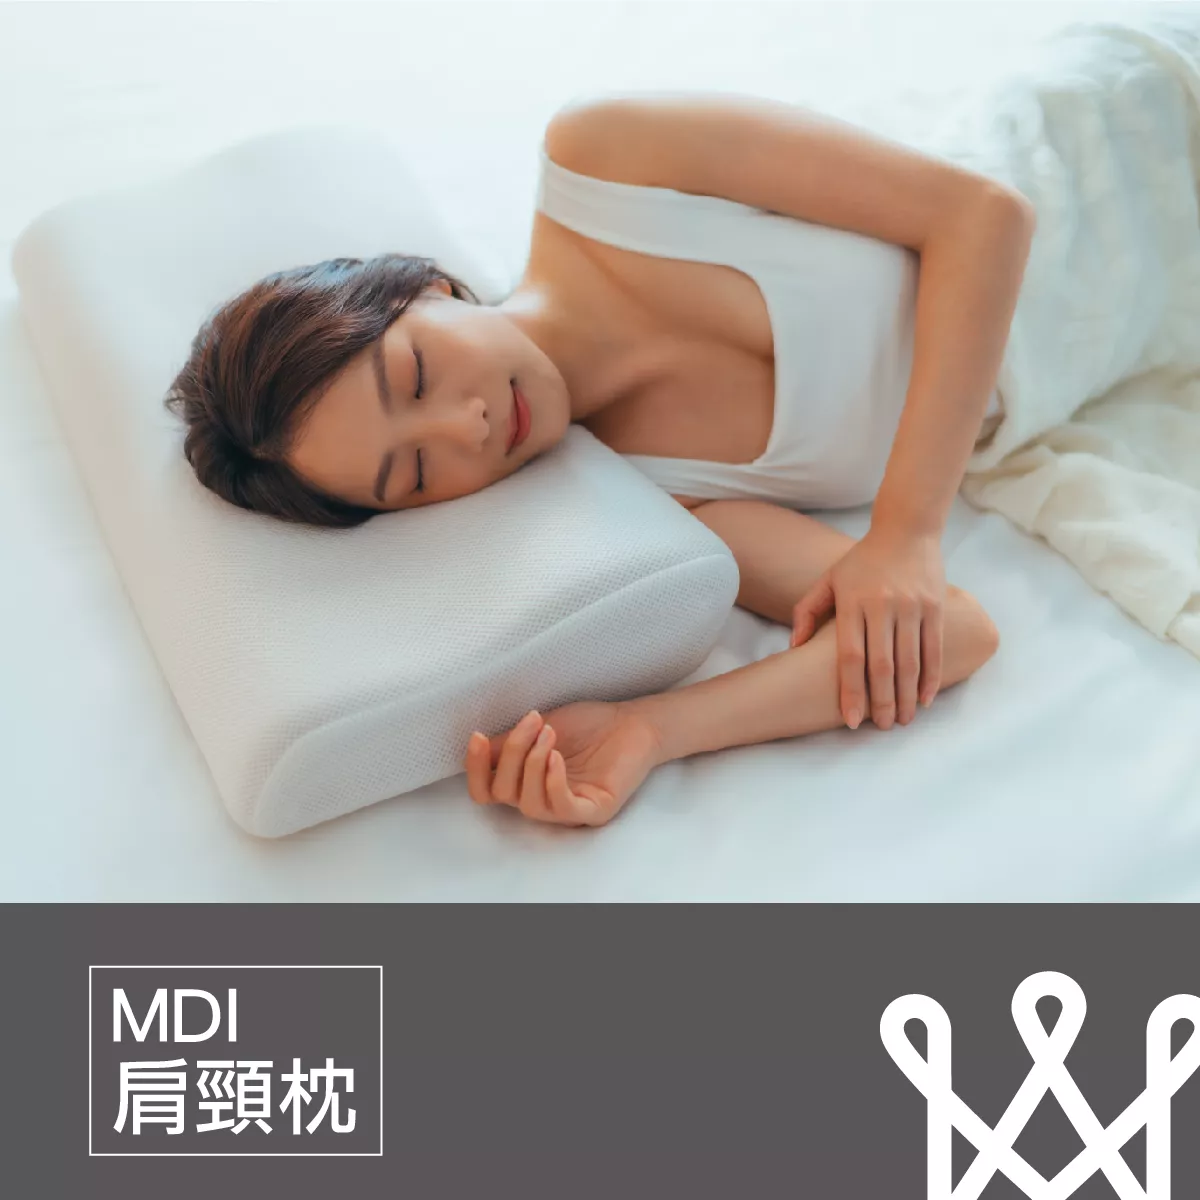 MDI肩頸枕,止鼾枕,側睡枕,趴睡枕,醫師推薦枕頭,枕頭推薦